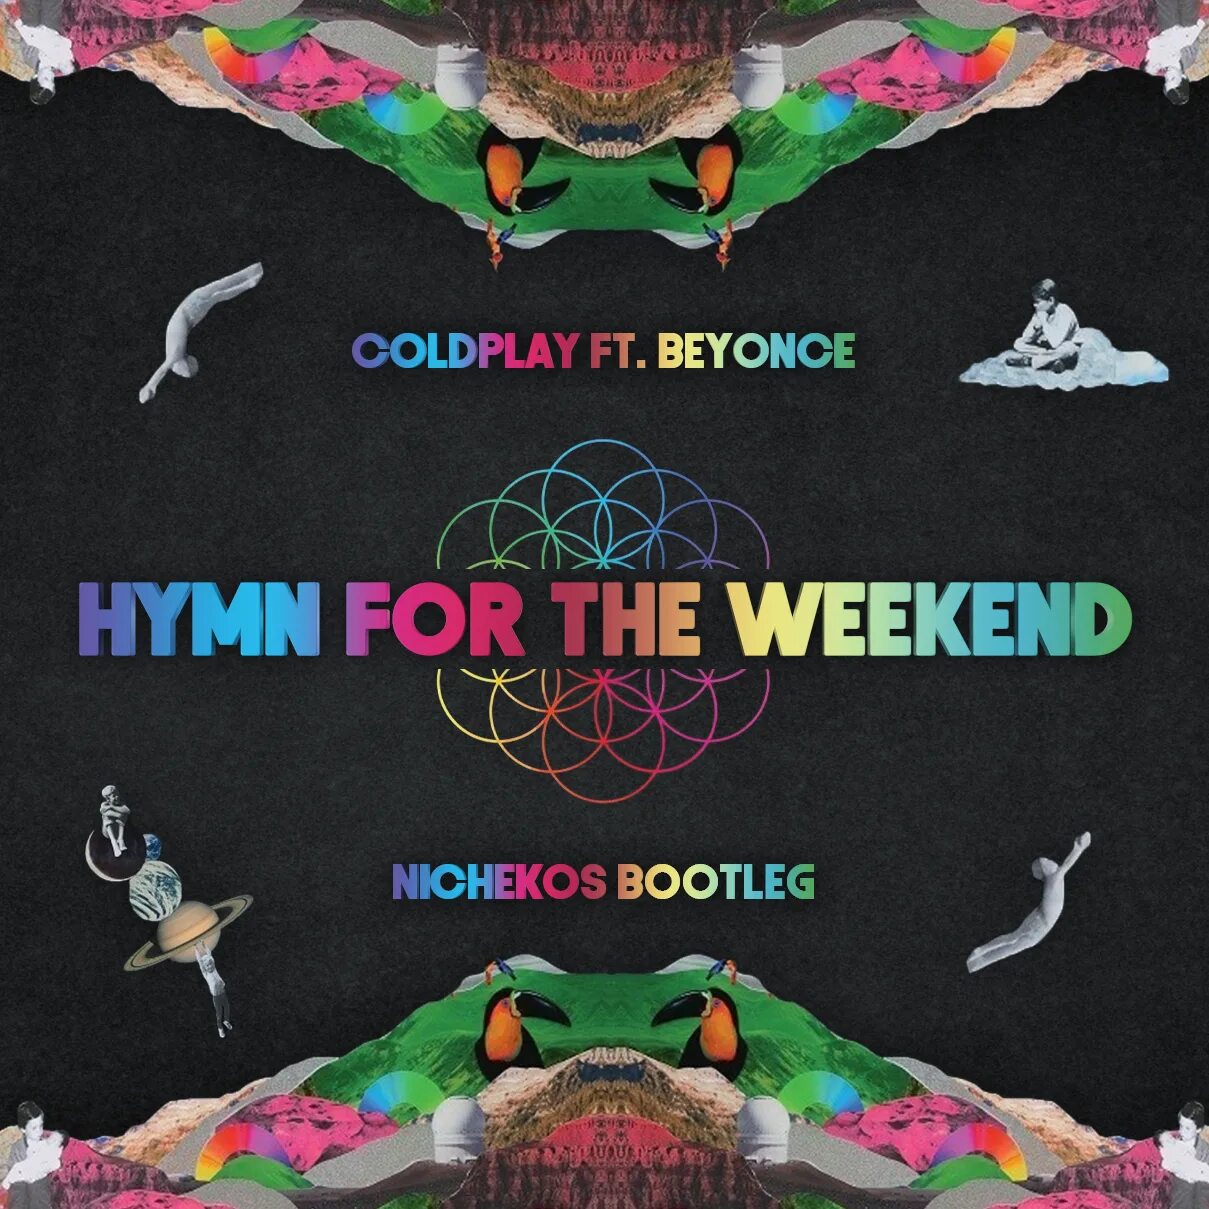 Бейонсе Coldplay Hymn. Колдплей Веекенд. Coldplay Beyonce Hymn for the weekend. Coldplay weekend. Hymn for the weekend перевод